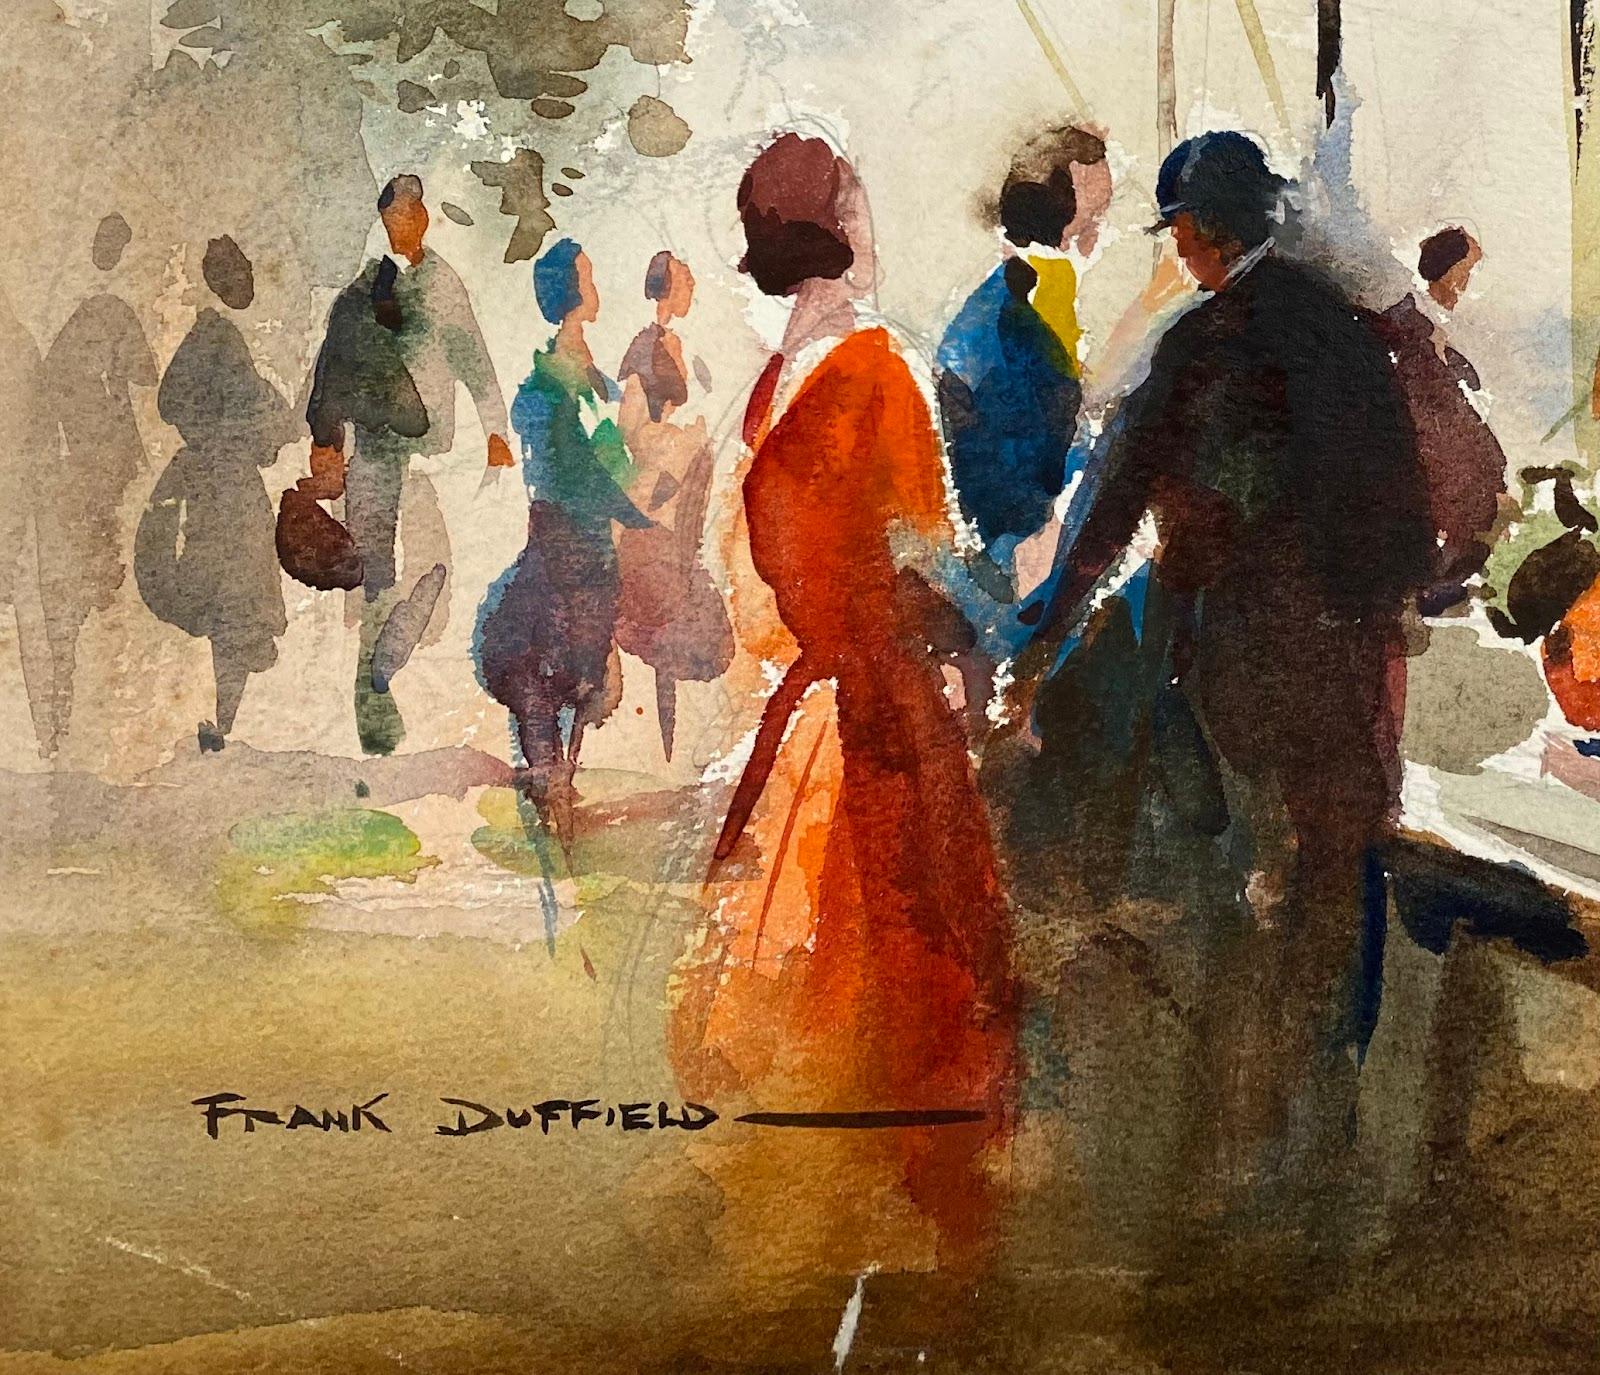 Impressionistische britische Gemäldefiguren aus der Mitte des 20. Jahrhunderts, auf antikem Markt  – Art von Frank Duffield